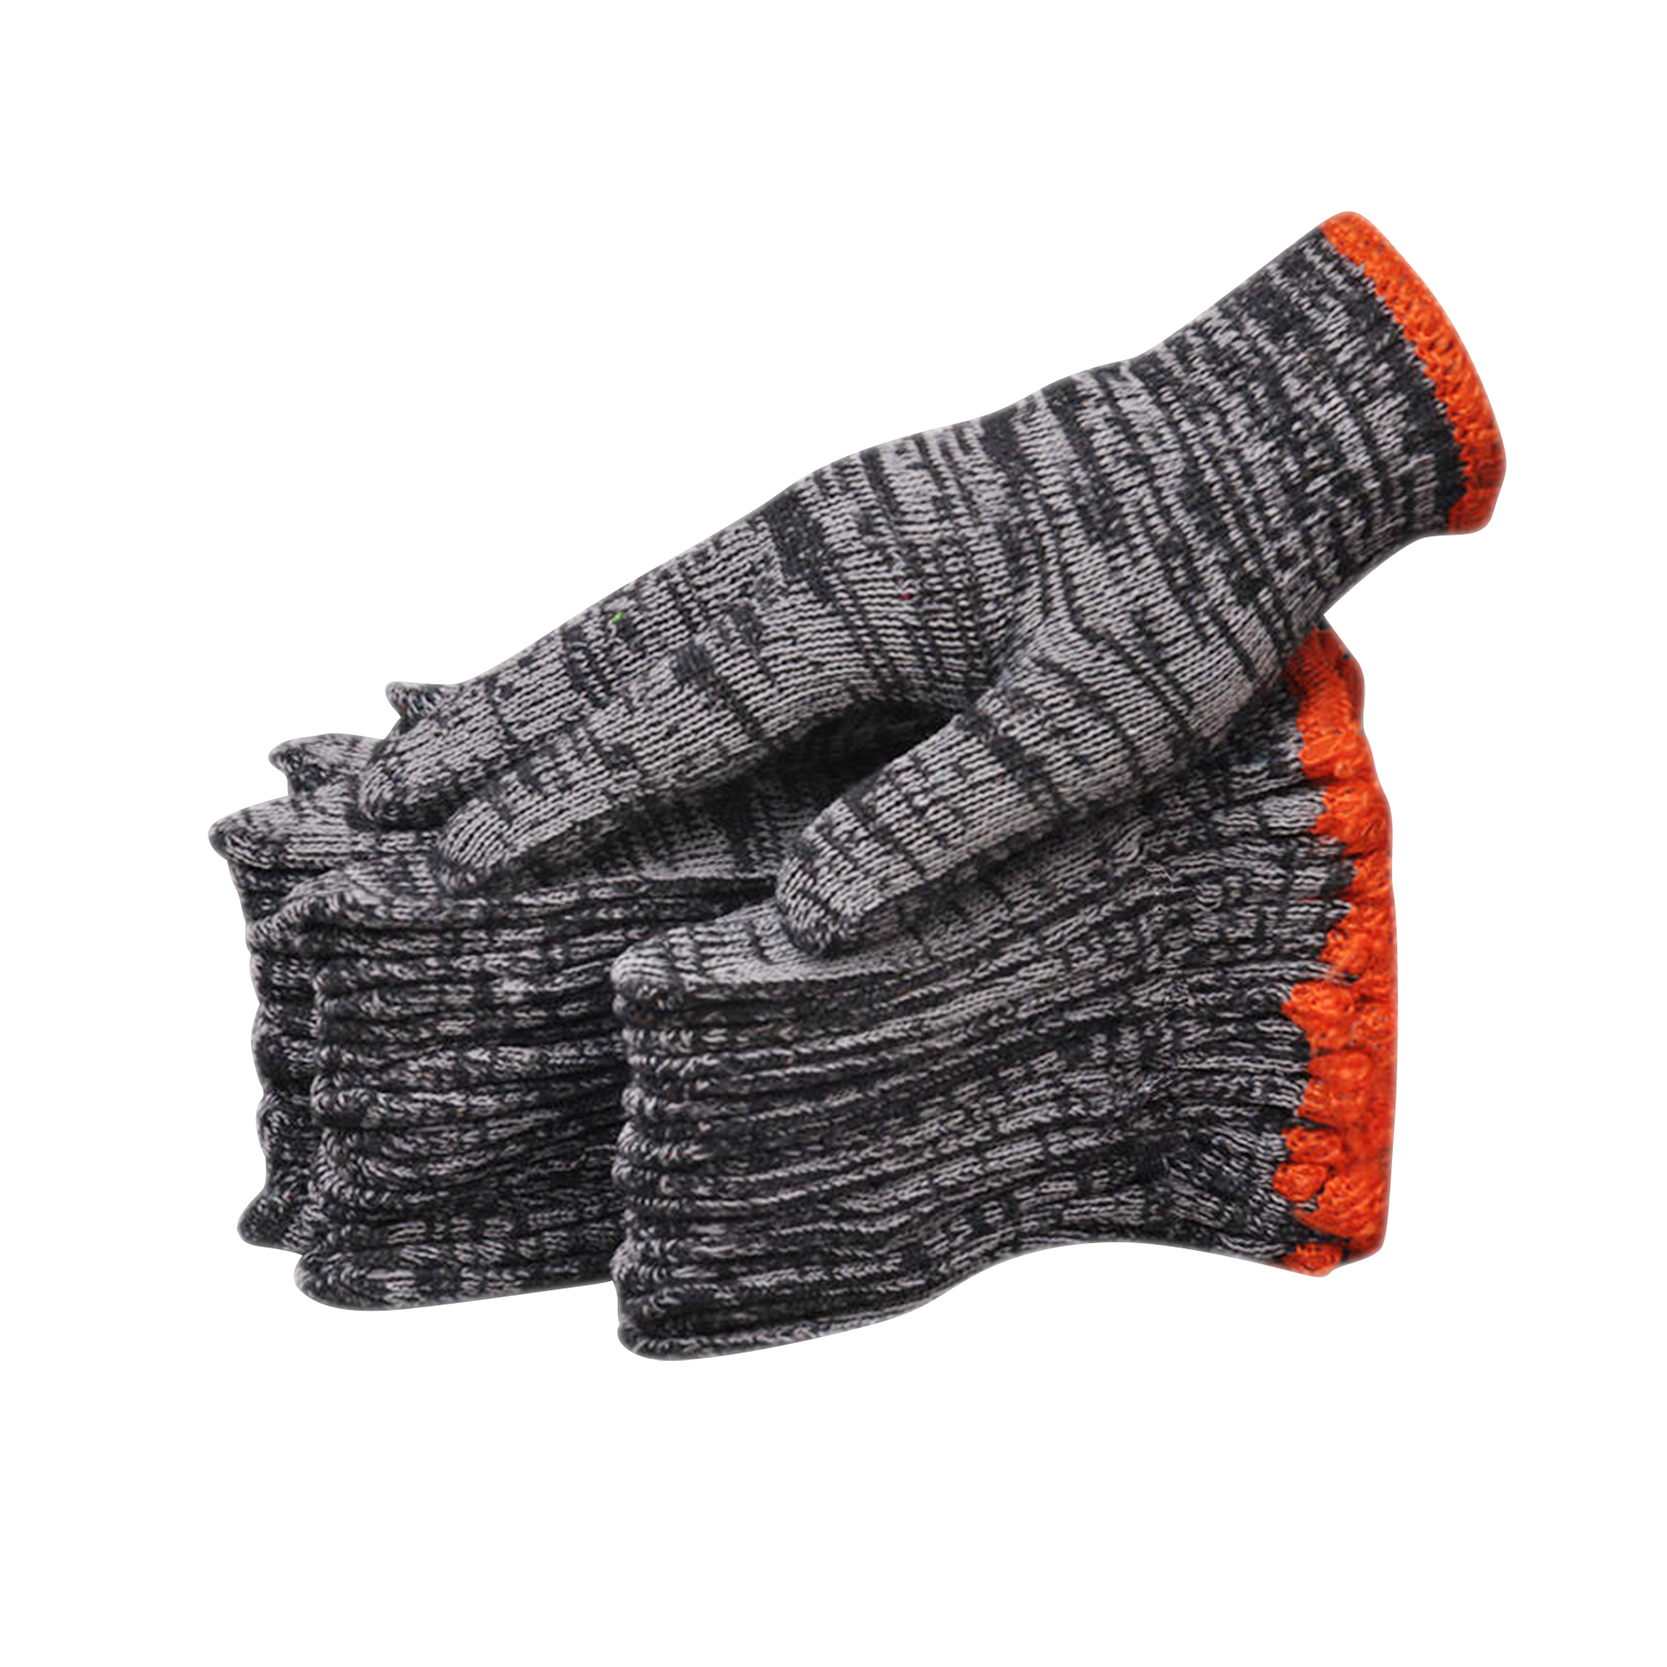 Најјефтиније микс обојене сигурносне плетене рукавице од поли памука/Гуантес Де